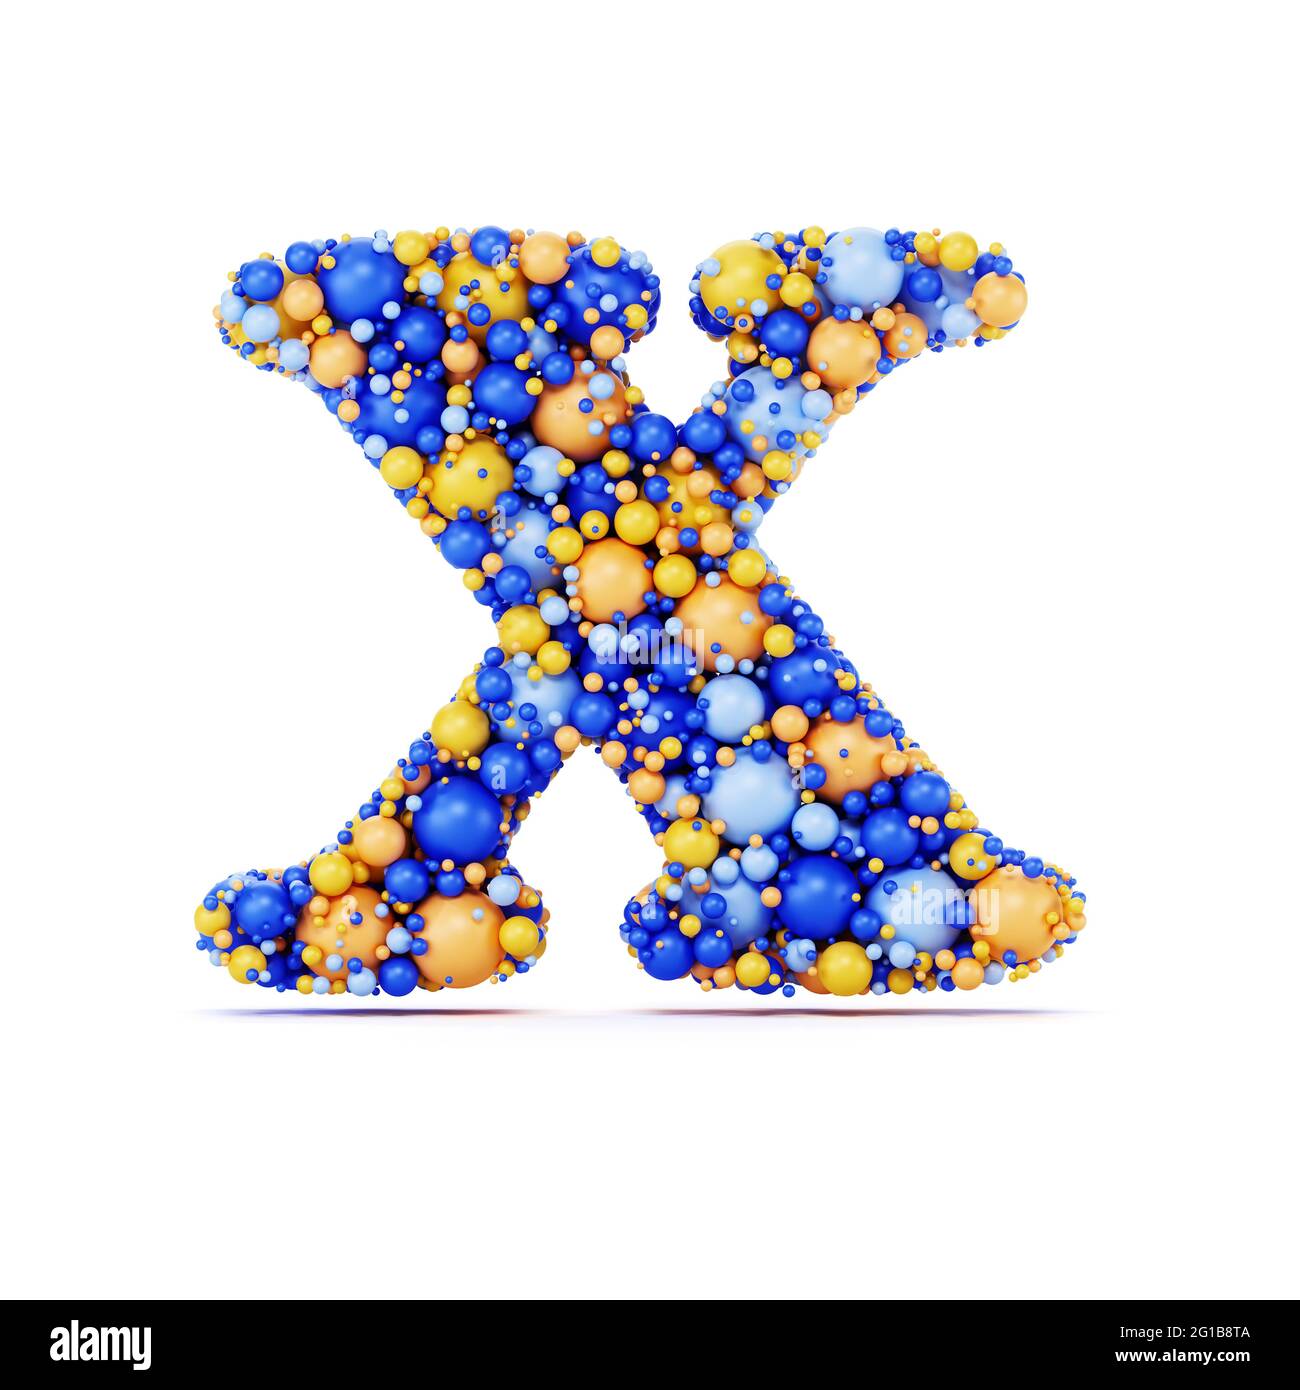 Lettre X avec boules brillantes de couleur. Illustration de rendu 3d réaliste. Isolé sur un arrière-plan blanc avec une dominante d'ombre Banque D'Images